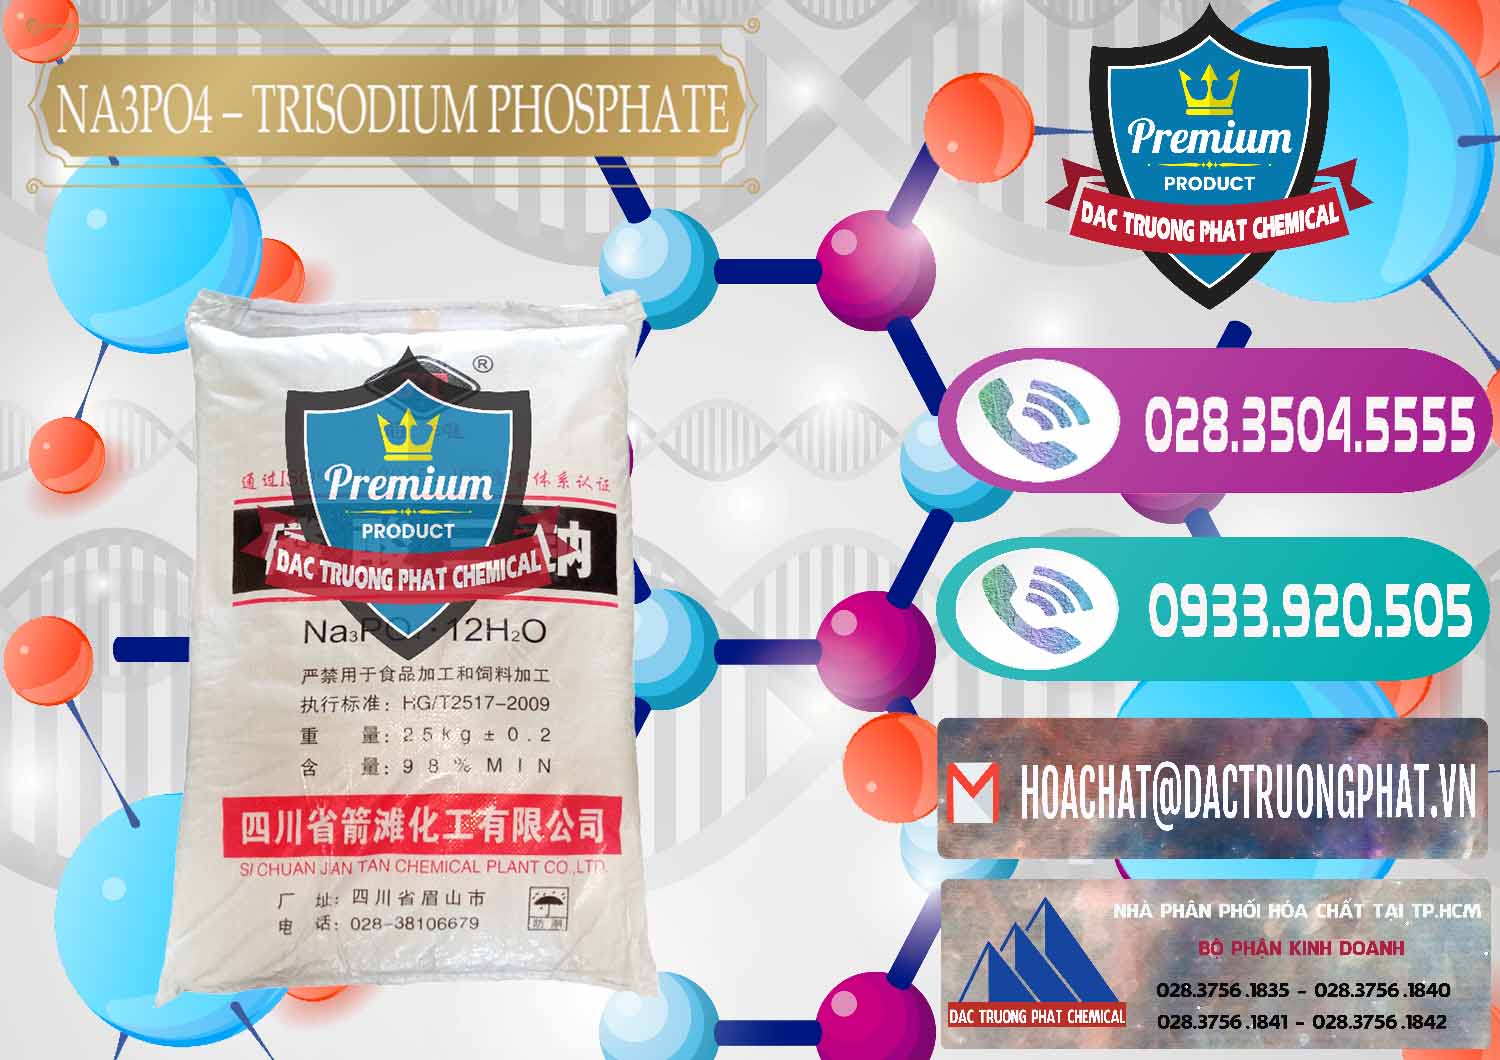 Cty chuyên bán _ cung cấp Na3PO4 – Trisodium Phosphate Trung Quốc China JT - 0102 - Cty cung cấp và bán hóa chất tại TP.HCM - hoachatxulynuoc.com